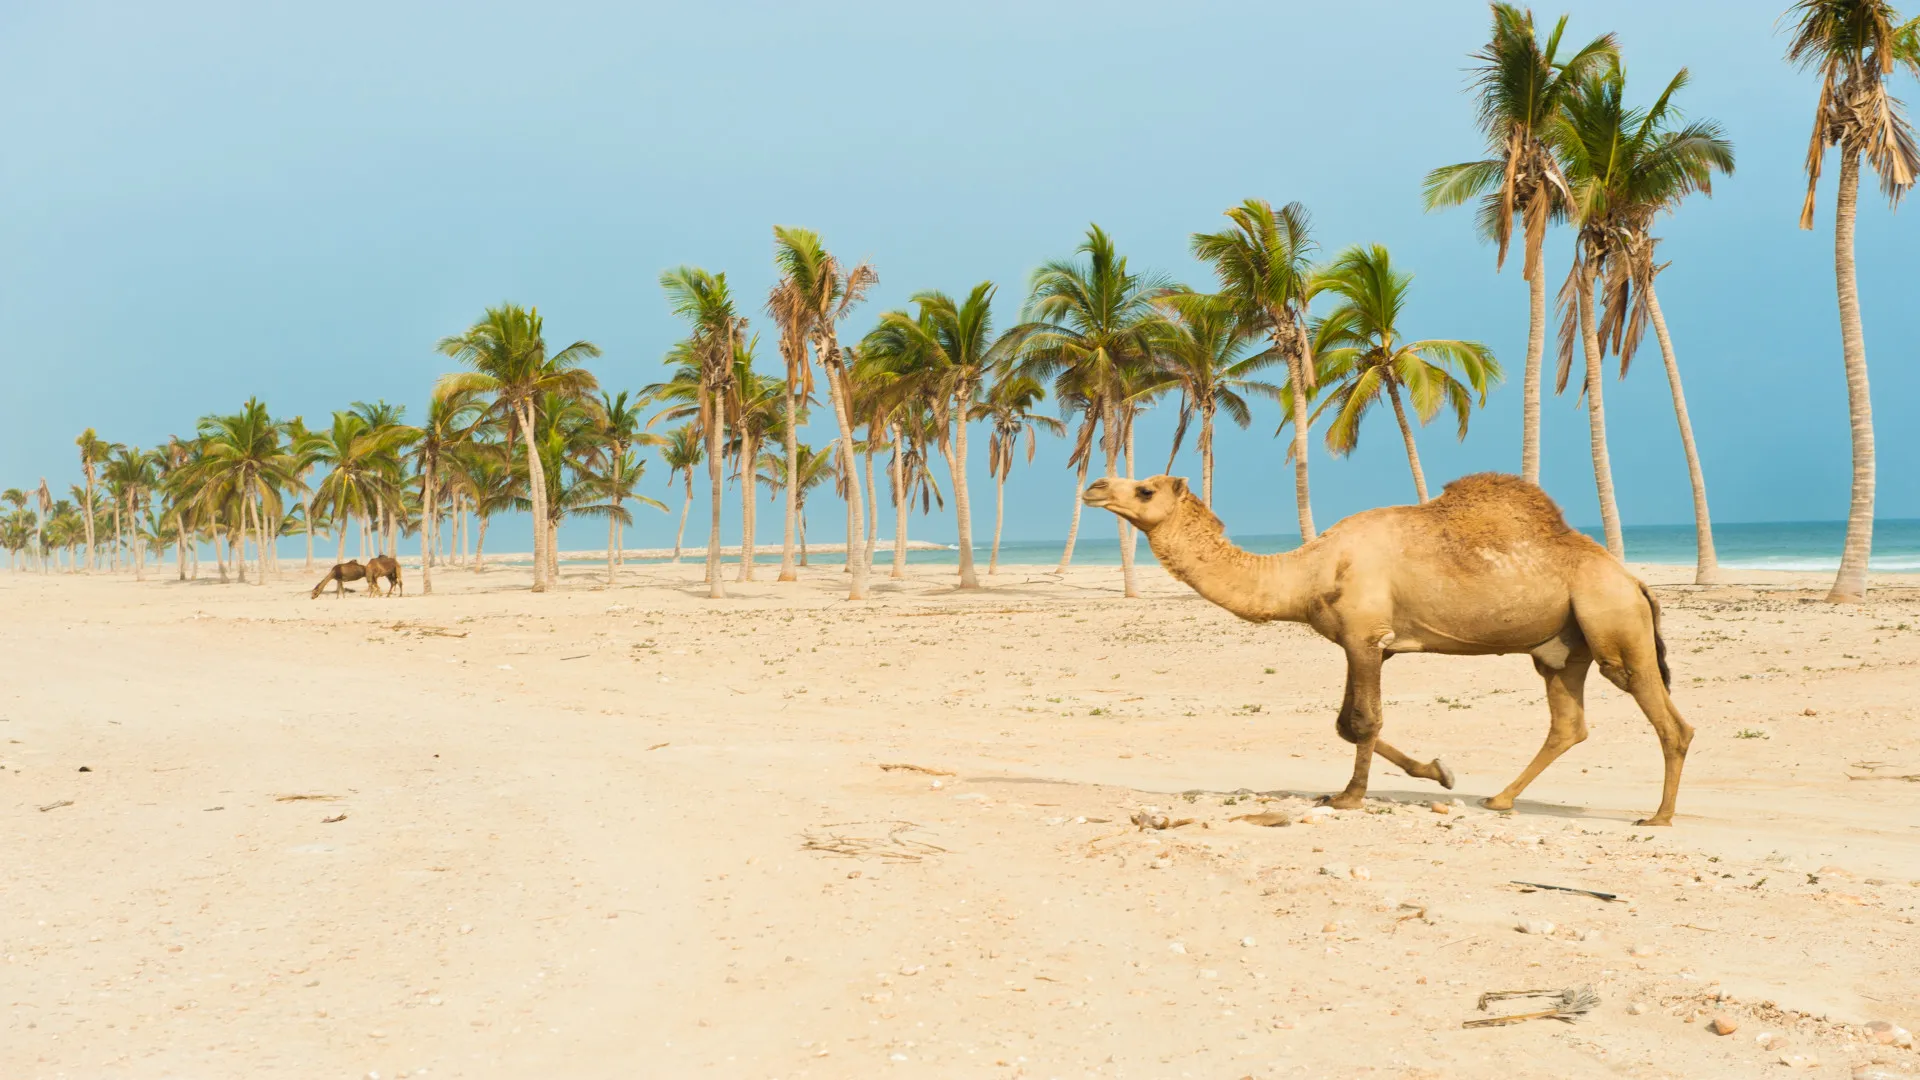 Kameel op strand met palmbomen, Salalah, Dhofar, Oman